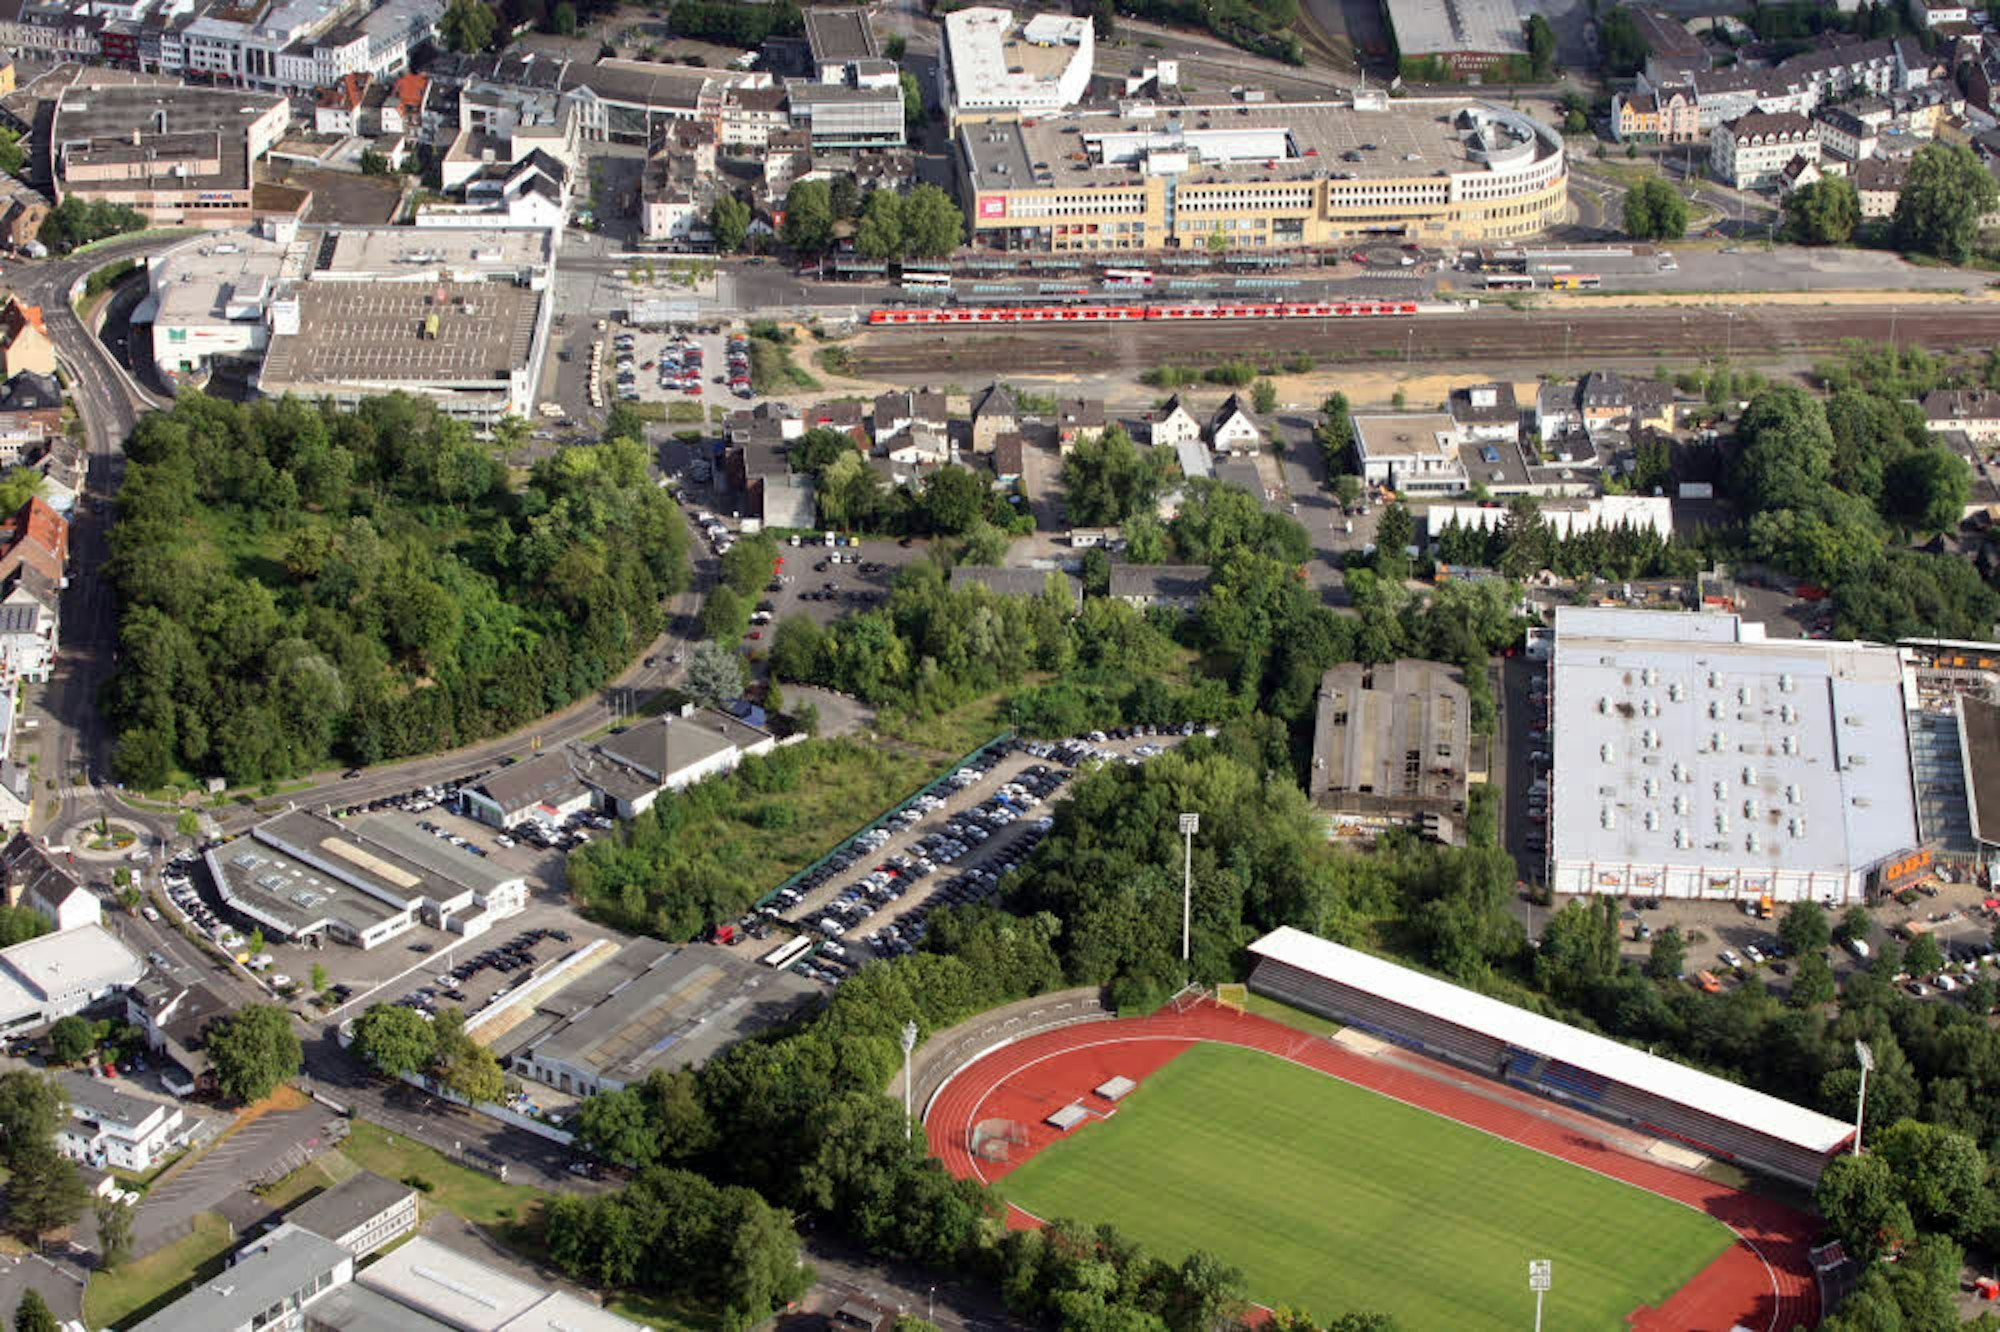 In der Mitte wird gebaut: Die frühere Gießerei soll abgebrochen werden, die Zufahrt von der Johann-Wilhelm-Lindlar-Straße eingerichtet werden. Rechts ist der Obi-Markt, unten die Belkaw-Arena, am oberen Bildrand der S-Bahnhof zu sehen.